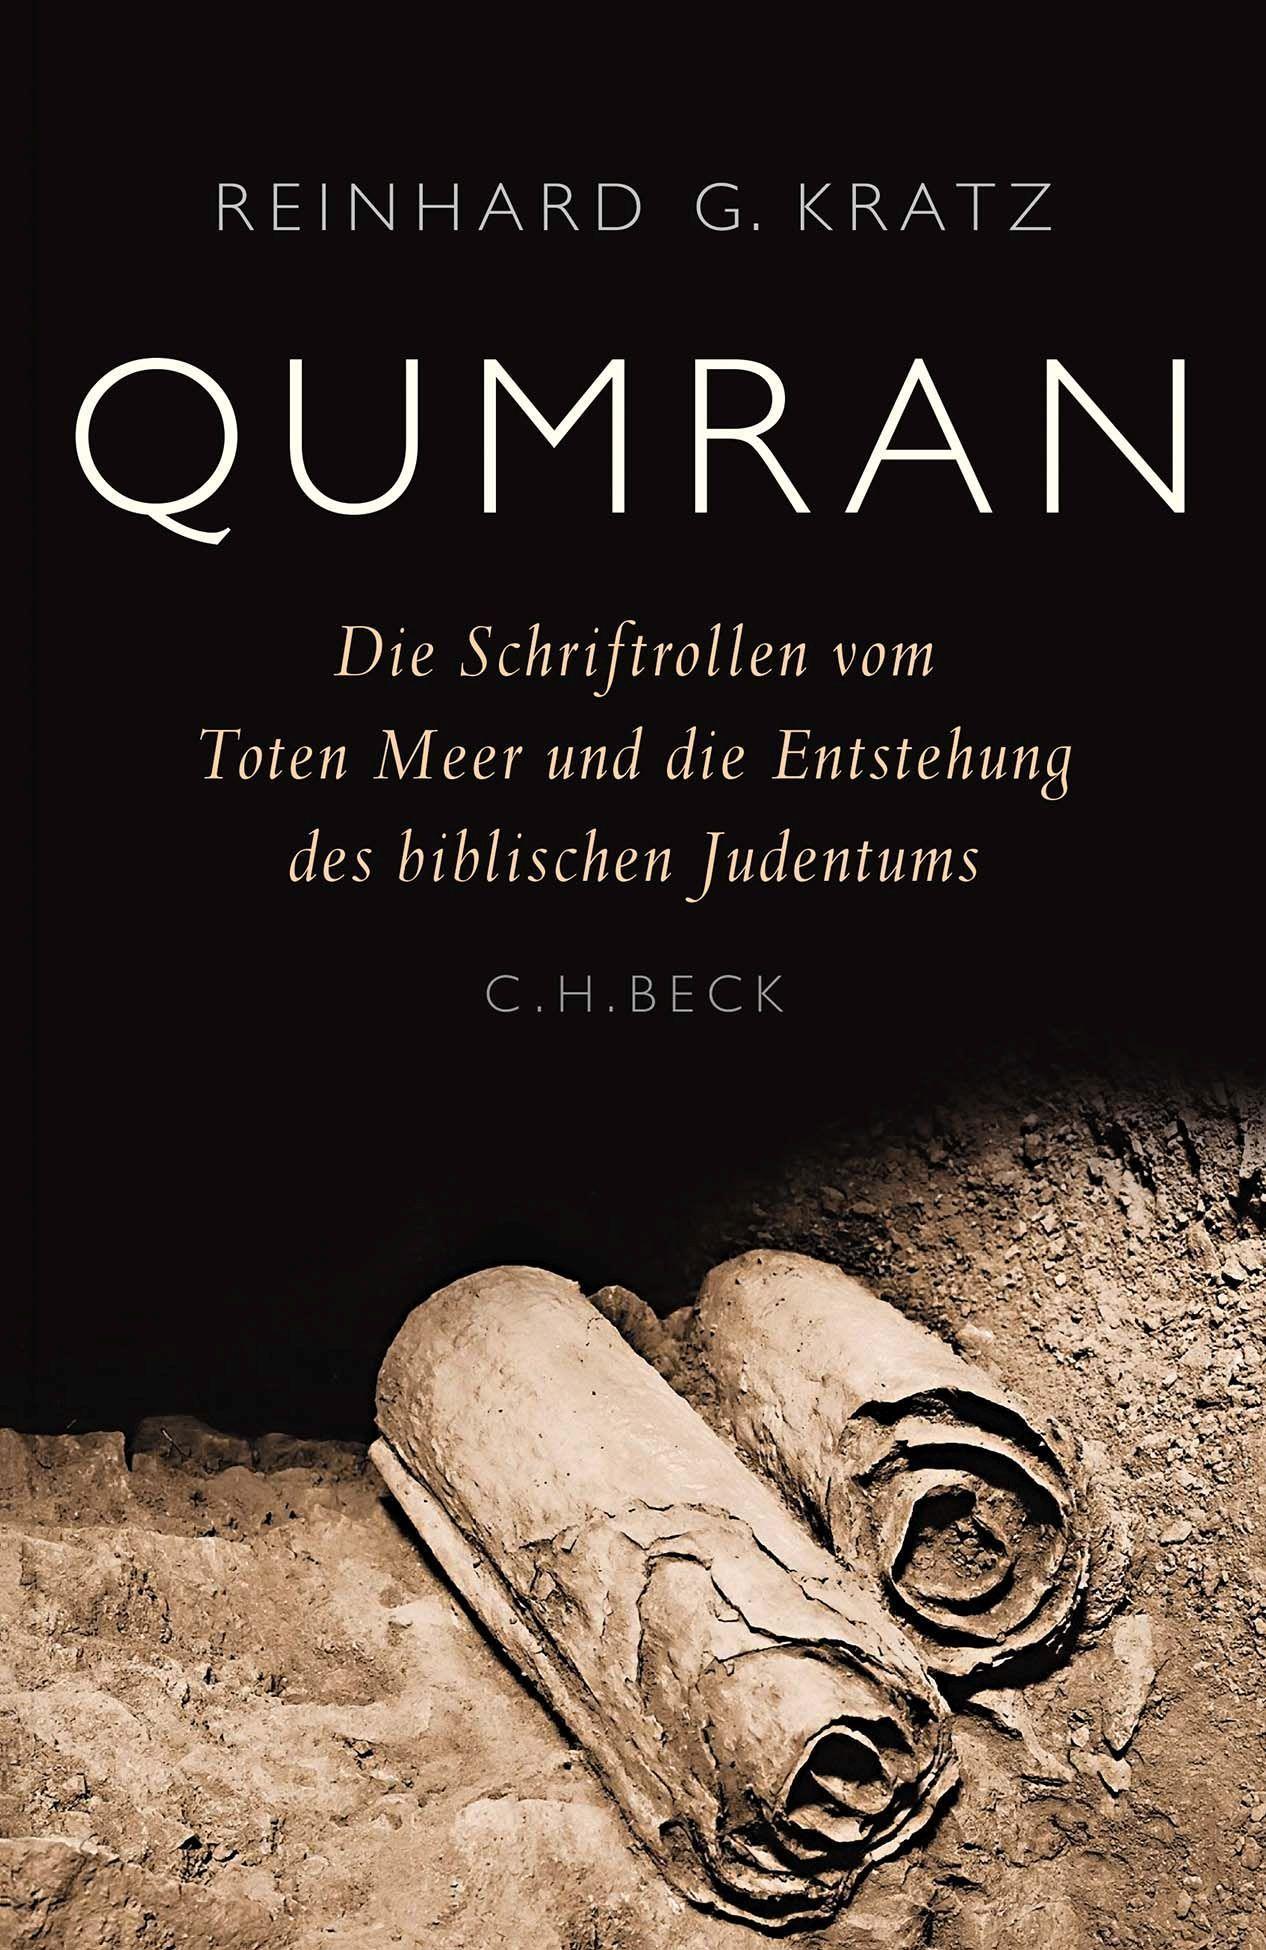 Qumran: Die Schriftrollen vom Toten Meer und die Entstehung des biblischen Judentums